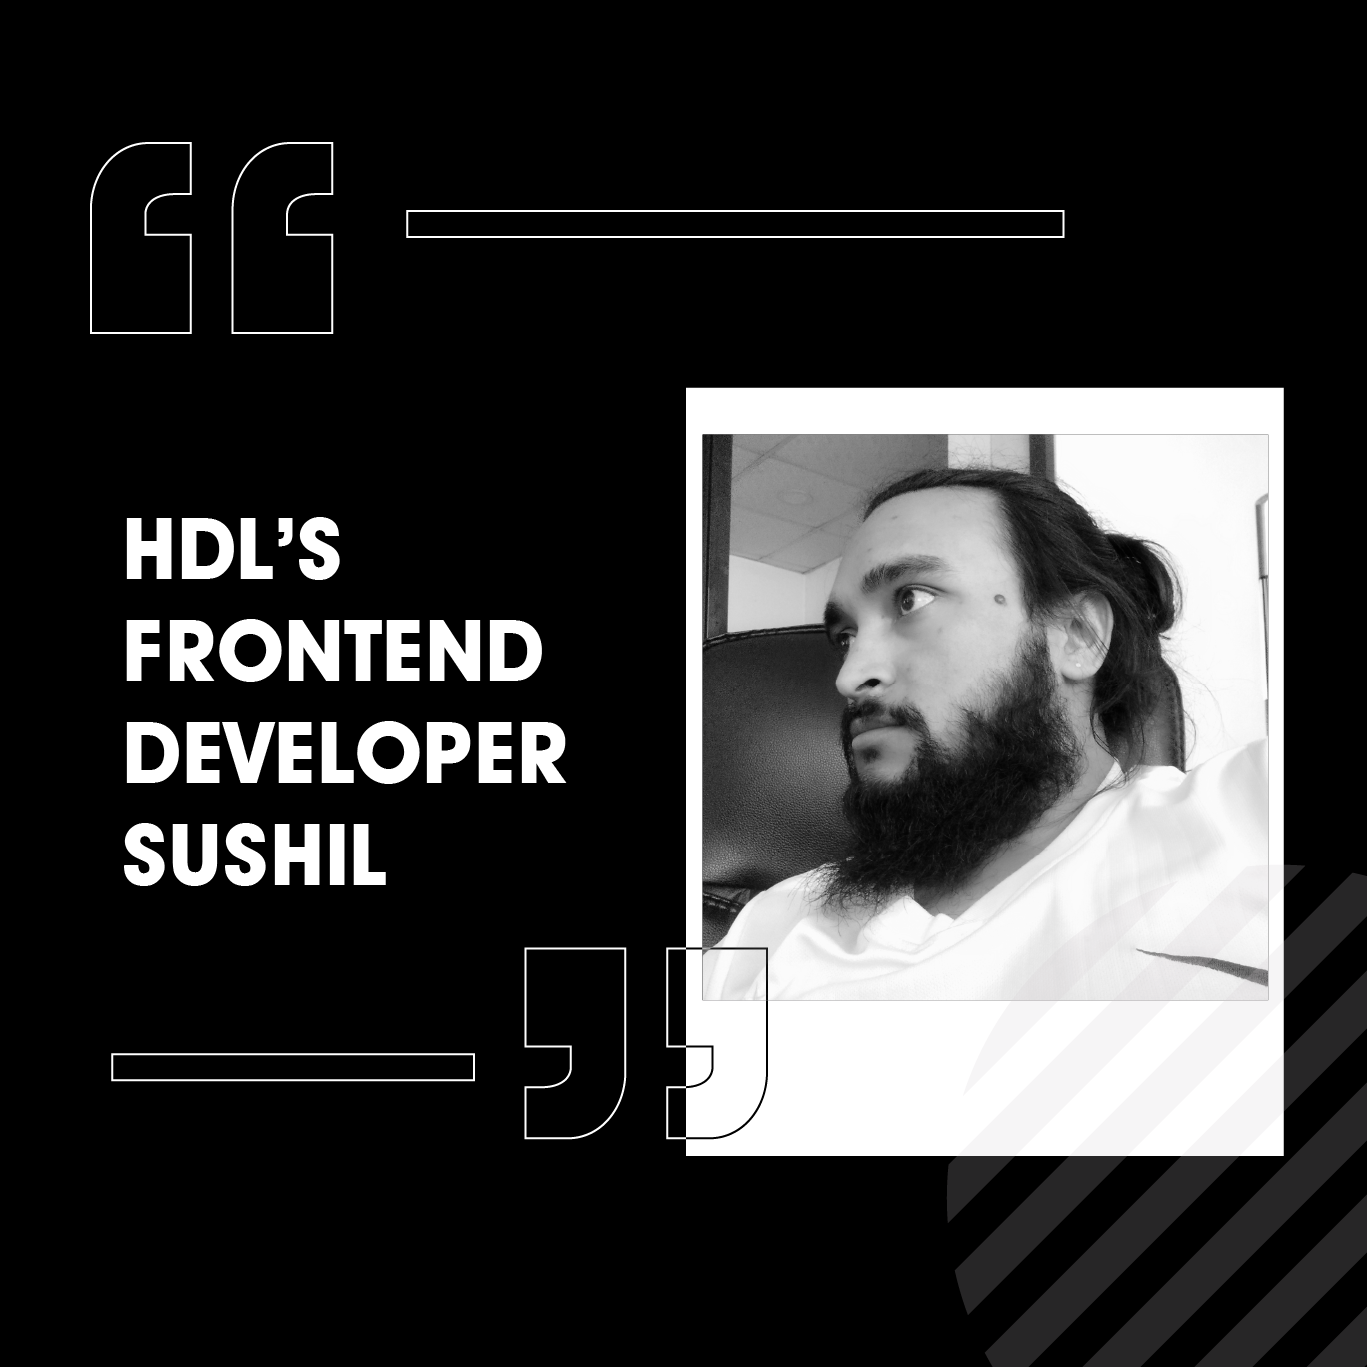 HDL’s Frontend Developer Sushil